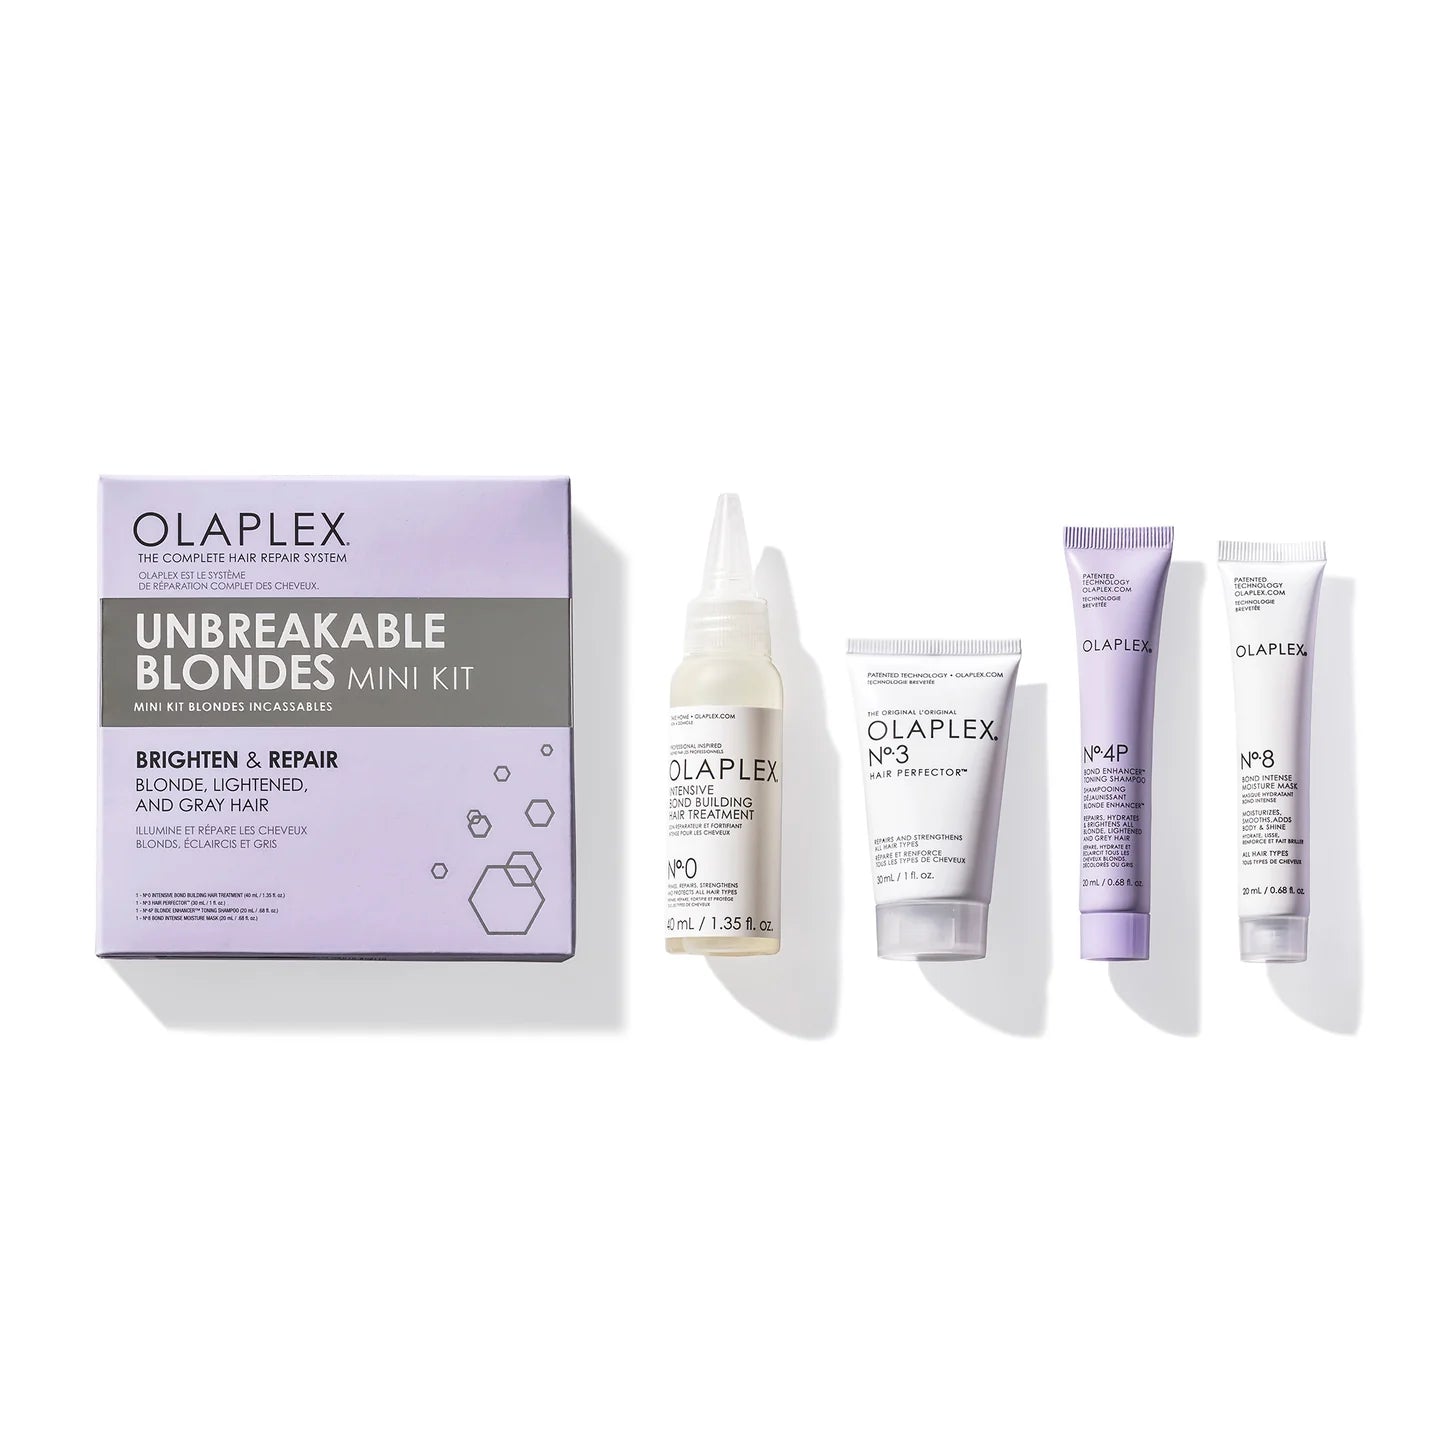 Міні-набір для відновлення блонду від Olaplex (Olaplex Unbreakable Blondes Mini Kit)